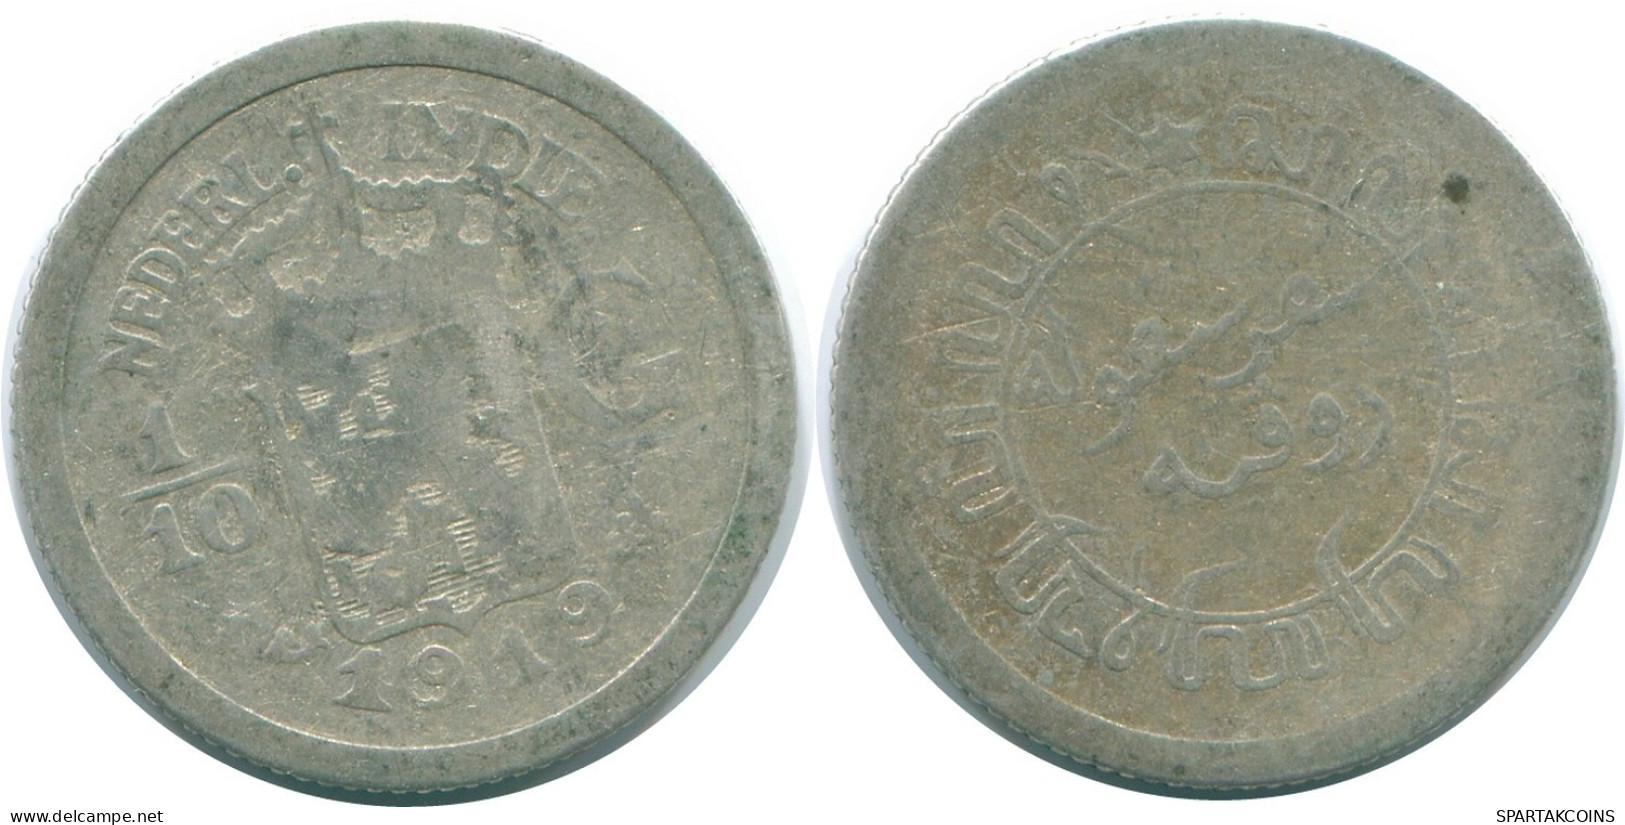 1/10 GULDEN 1919 NETHERLANDS EAST INDIES SILVER Colonial Coin #NL13344.3.U.A - Niederländisch-Indien